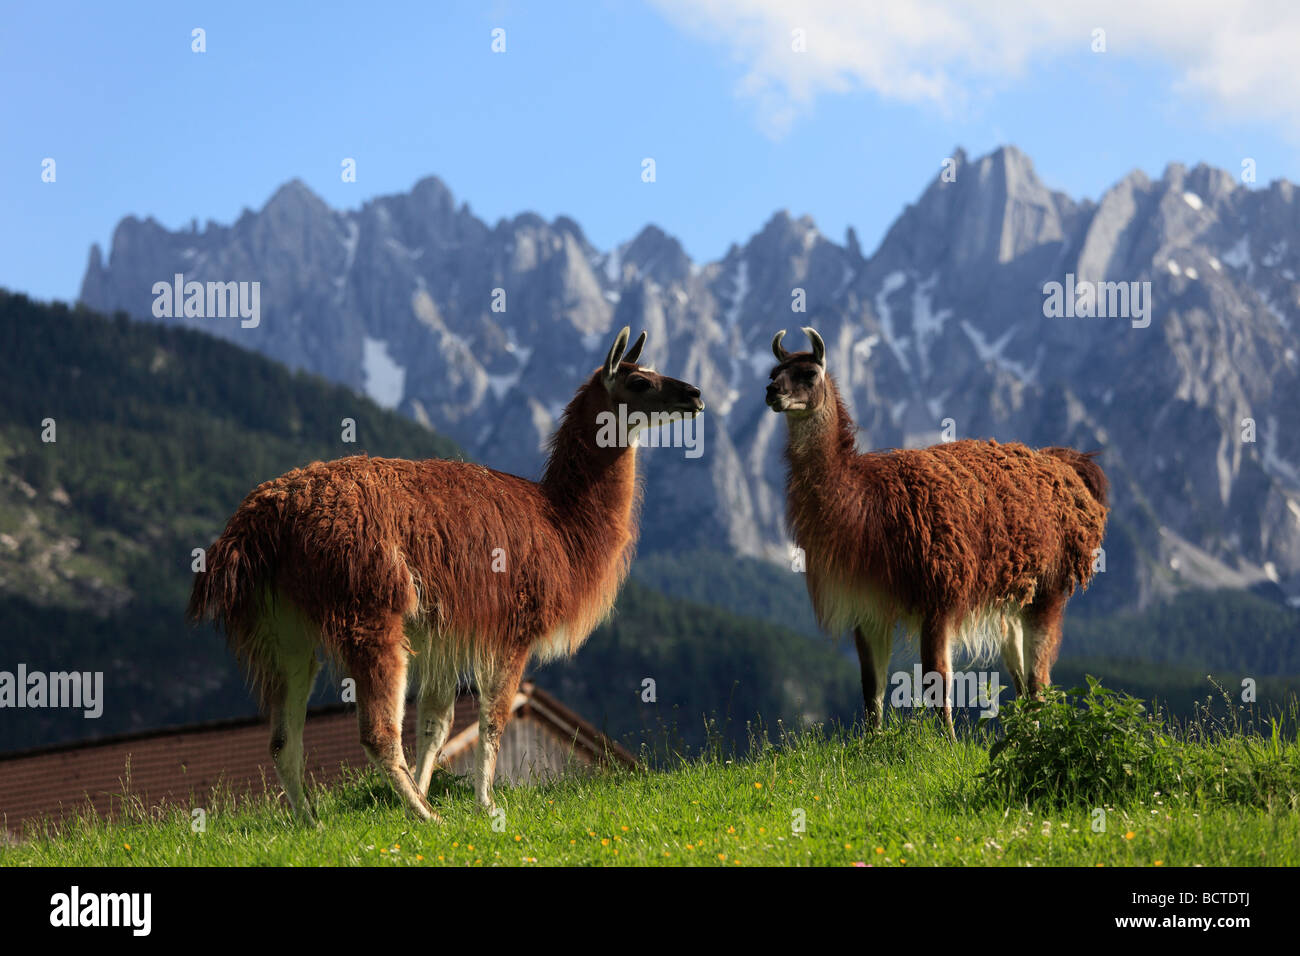 Llamas in Gosau, Salzkammergut region, Upper Austria, Austria, Europe Stock Photo